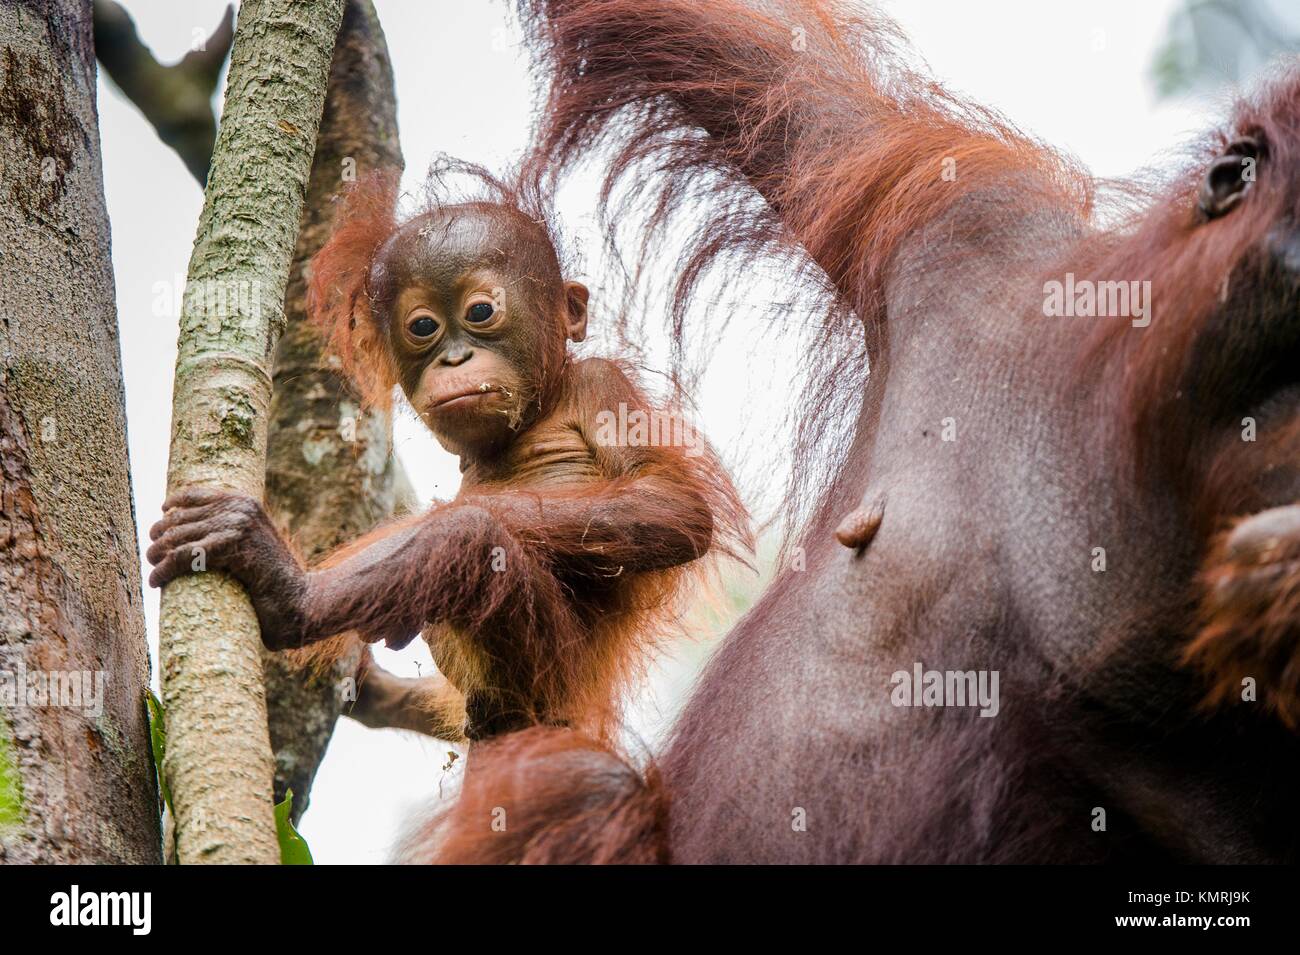 Mère et de l'orang-outan cub dans un habitat naturel. Orang-outan (Pongo pygmaeus) wurmmbii dans la nature sauvage. Les forêts tropicales de l'île de Bornéo. L'Indonésie Banque D'Images